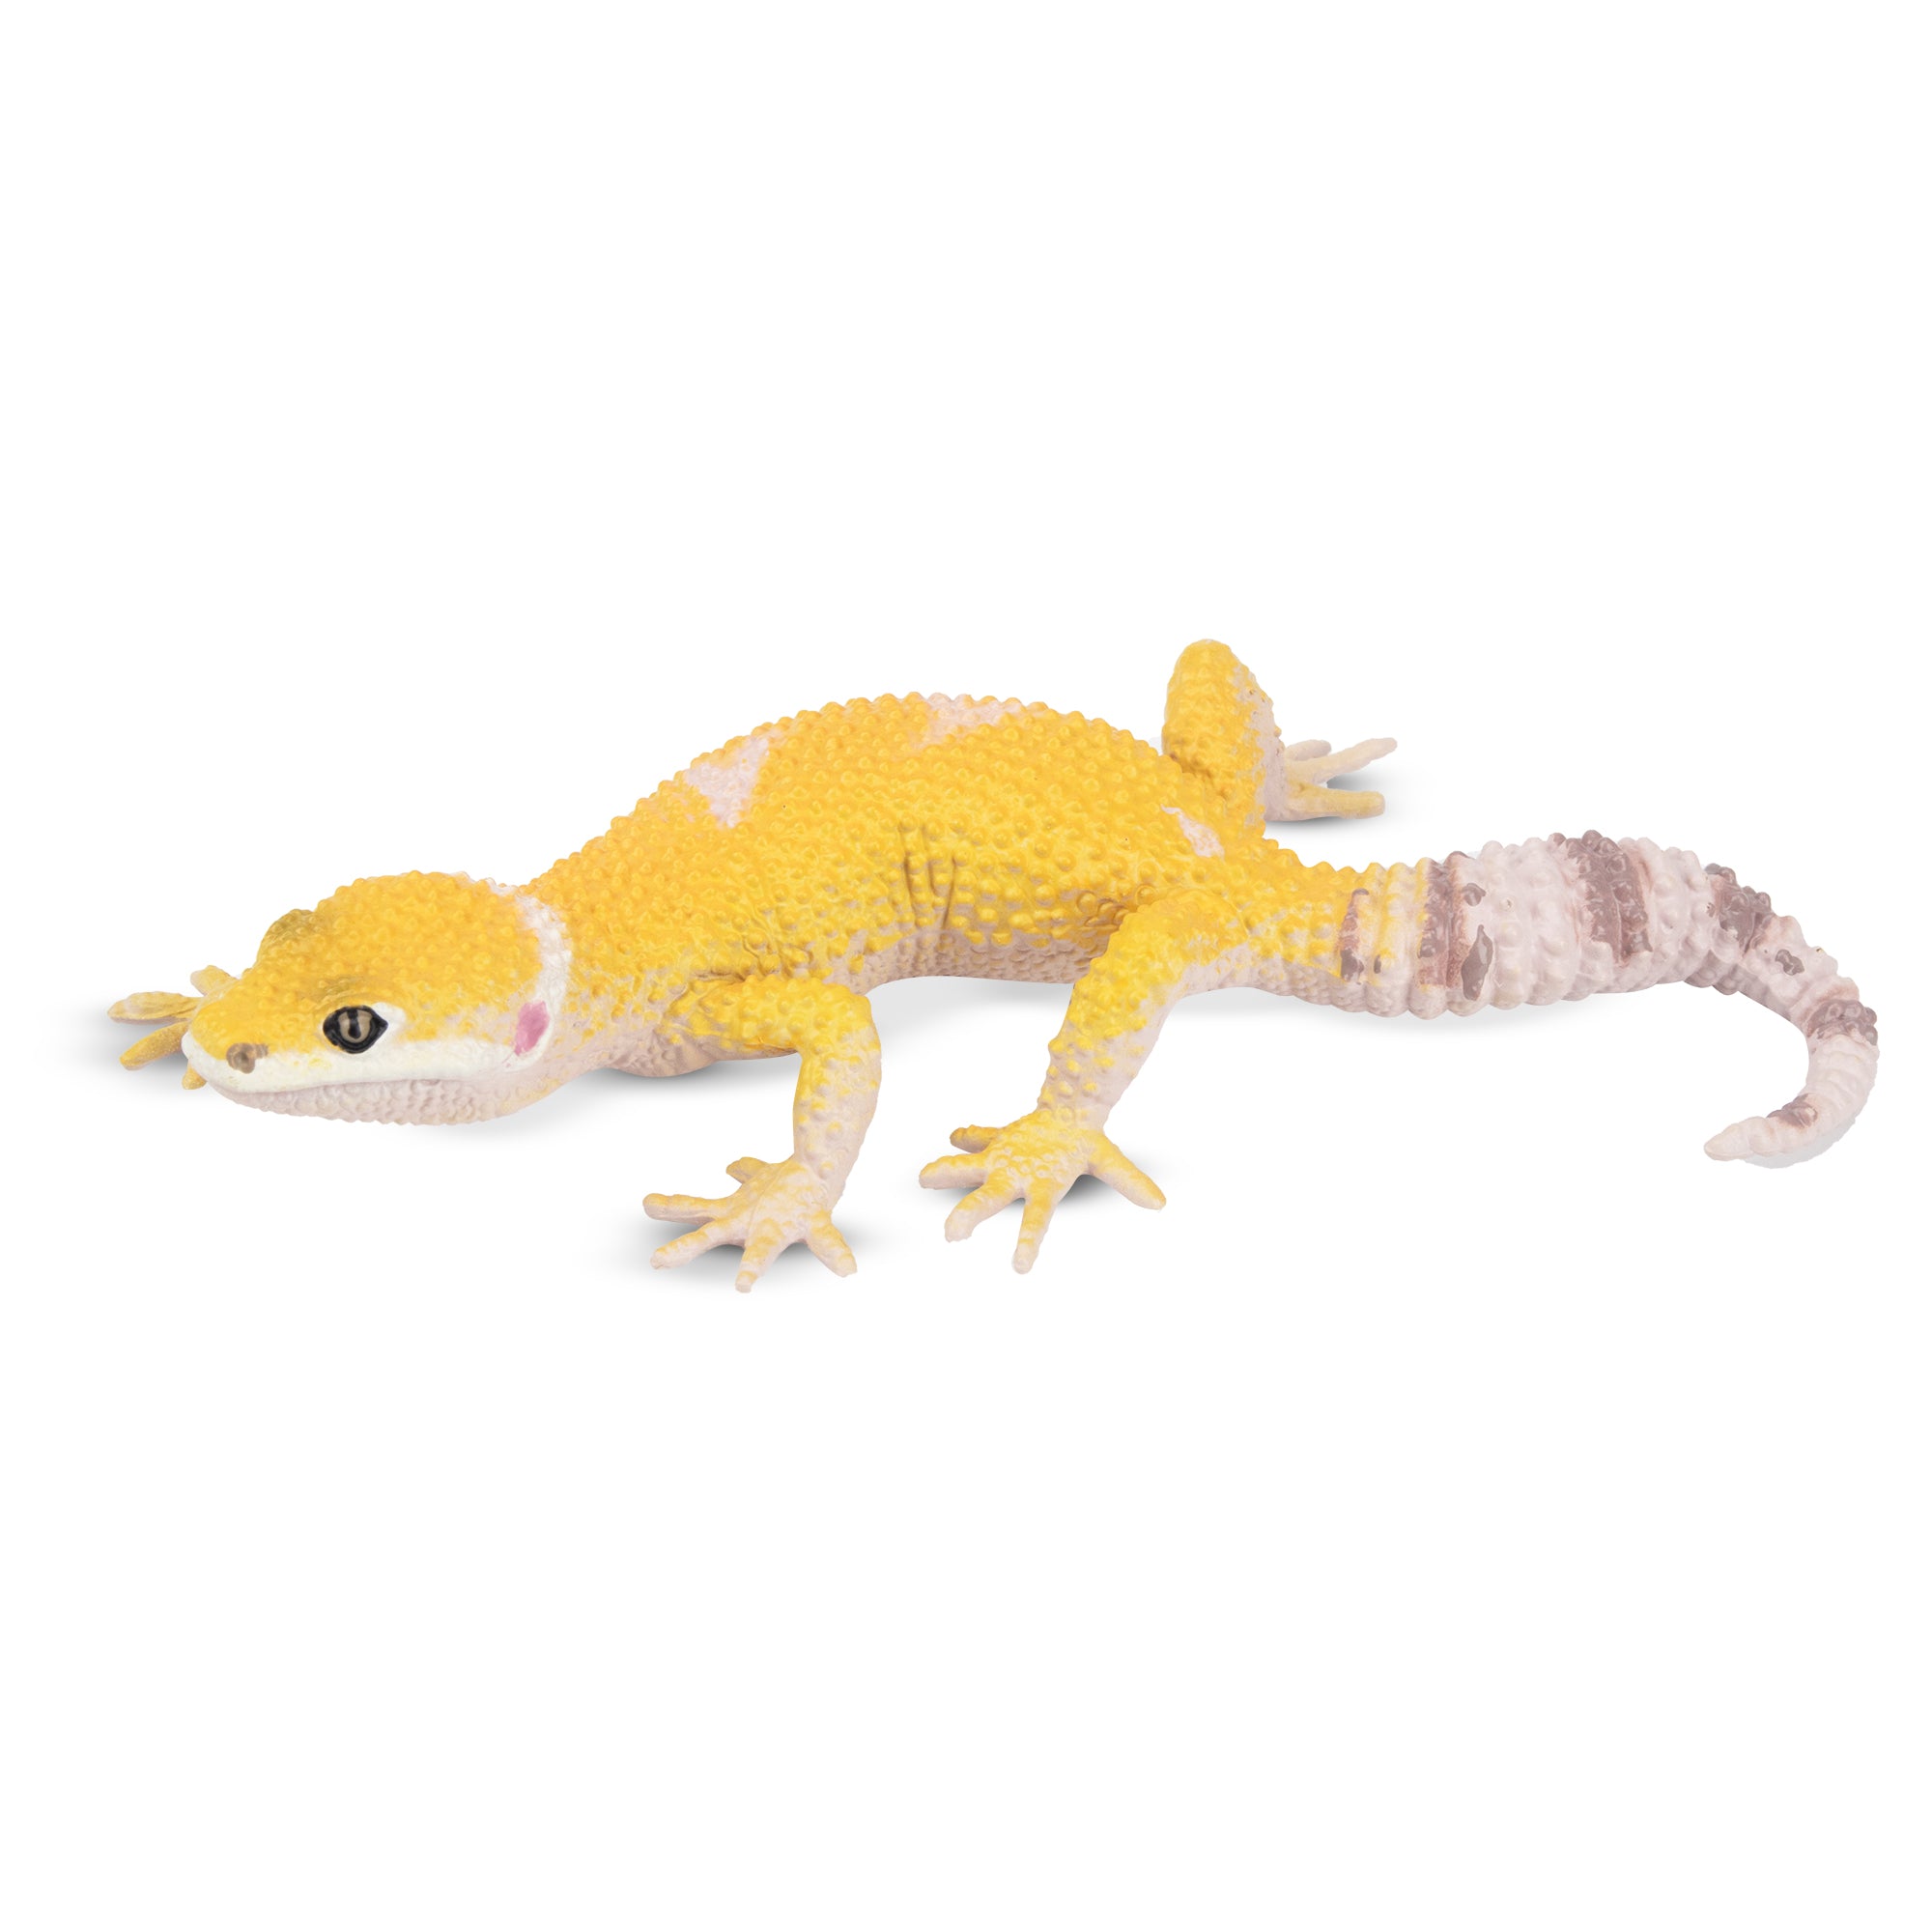 Toymany Gecko Figurine Toy